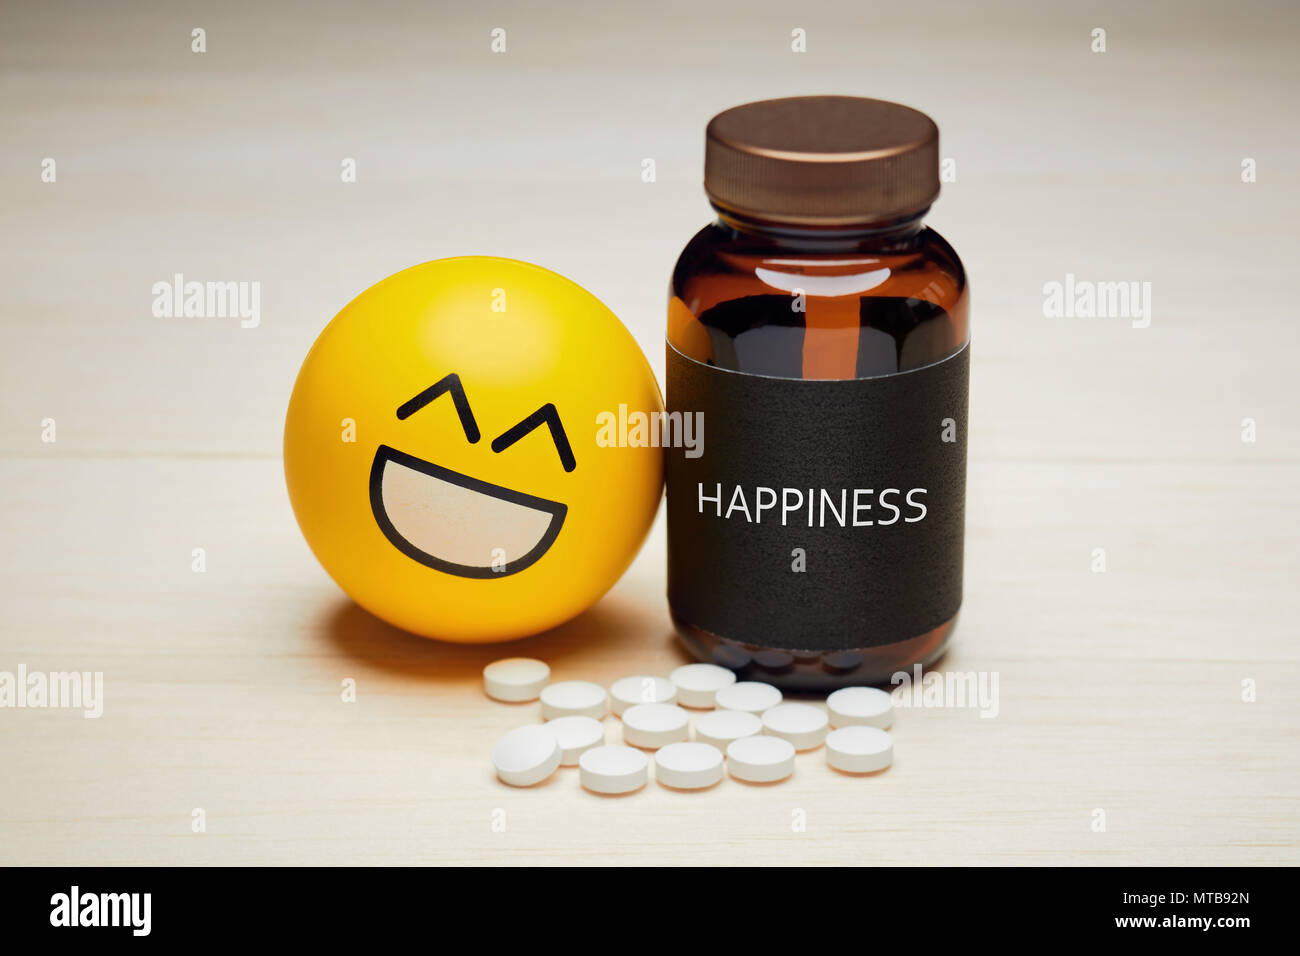 Anti depressant Drogenkonsum und Glück Konzept. Gelbe lächeln Emoji legte sich auf ein Medikament Container mit einer Black Label geschrieben Glück auf. Haufen Stockfoto